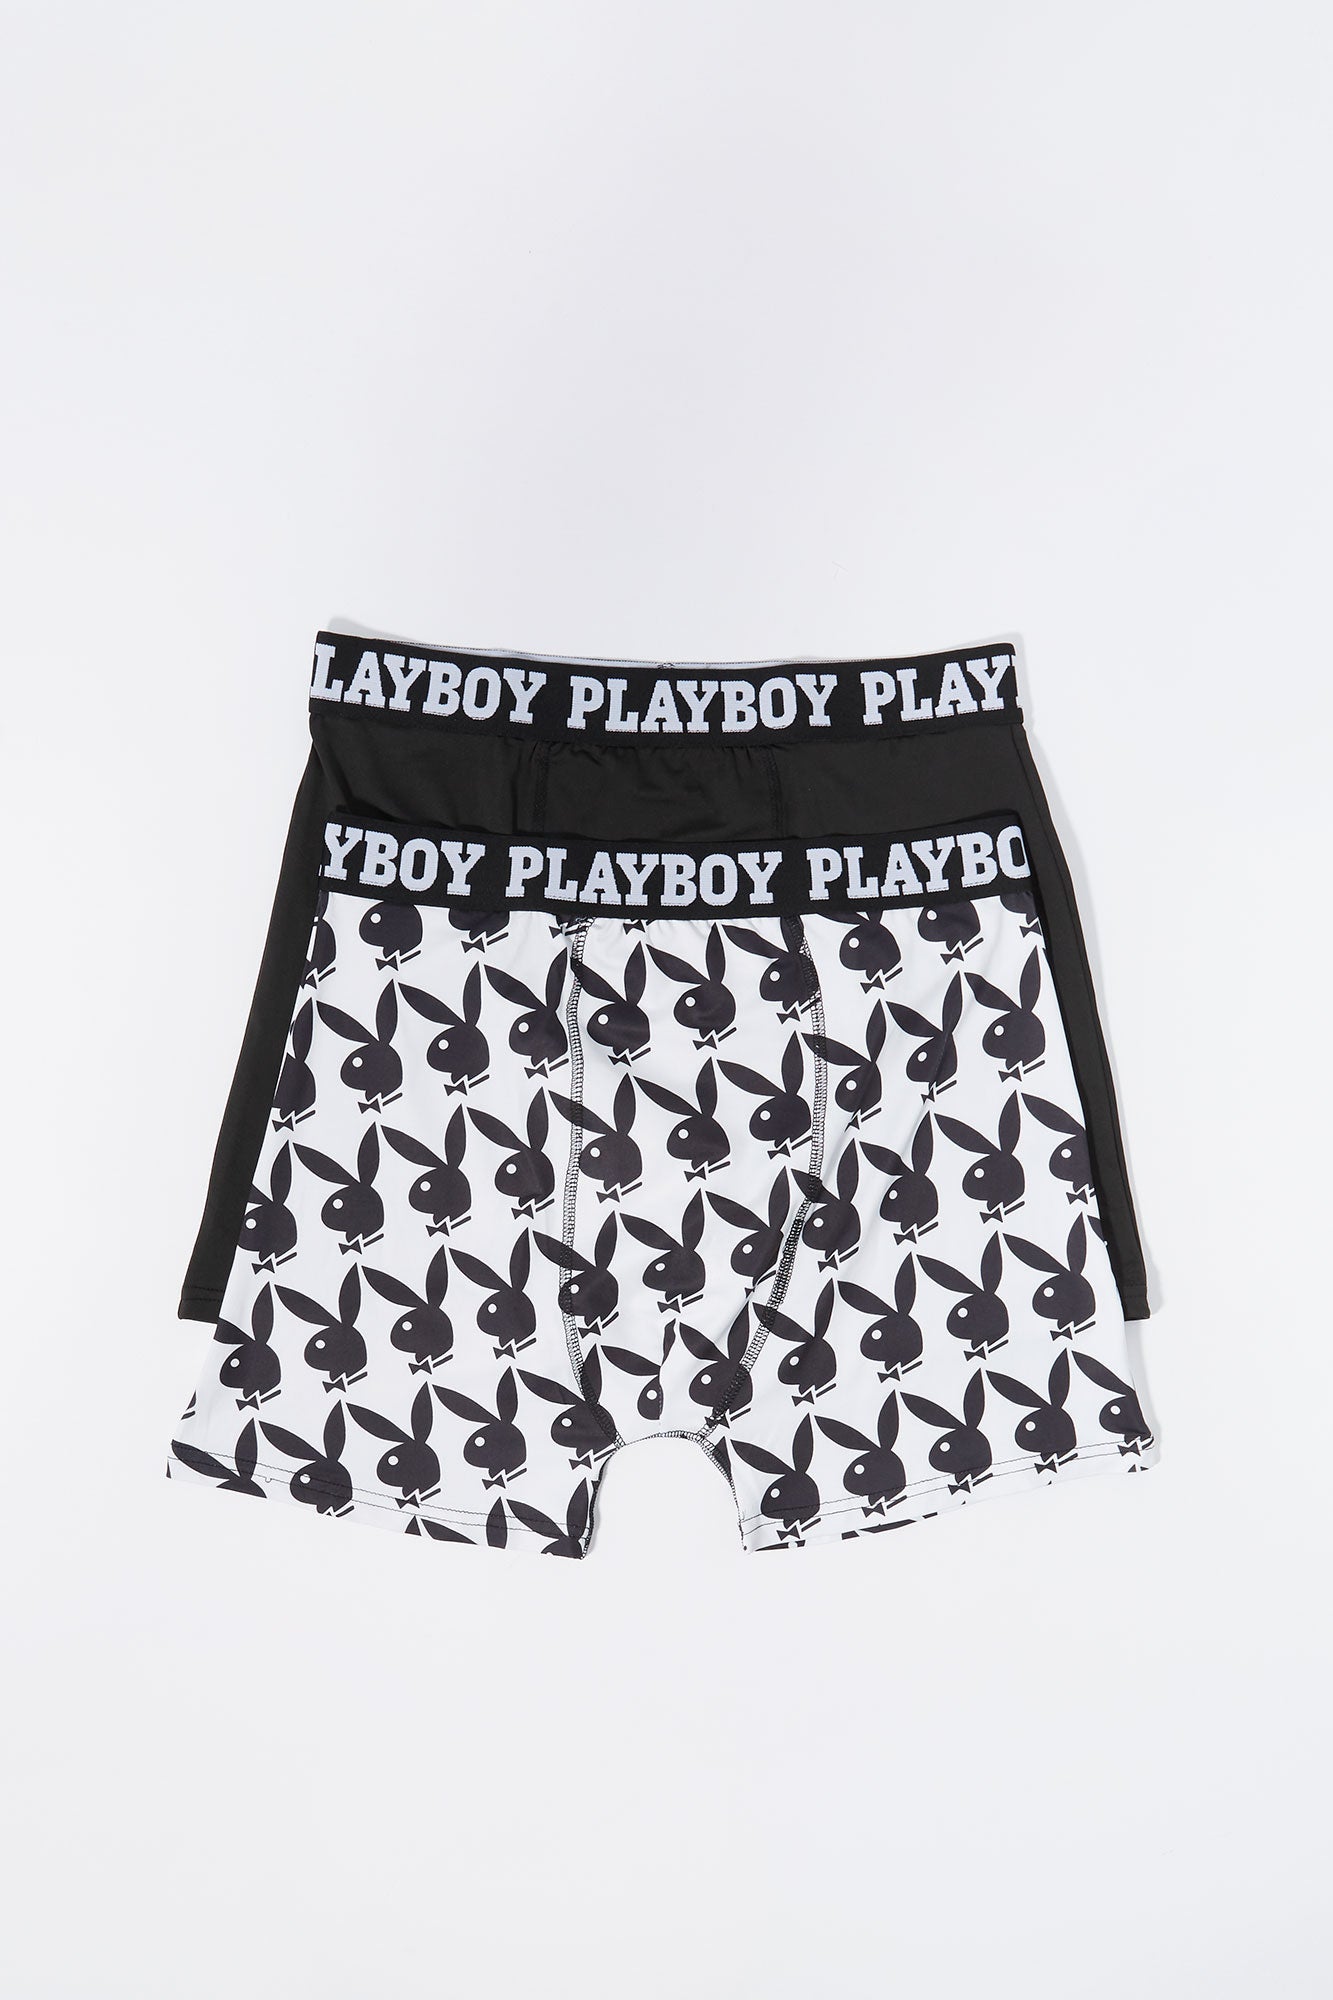 Wtc Playboy boxers : r/FashionReps